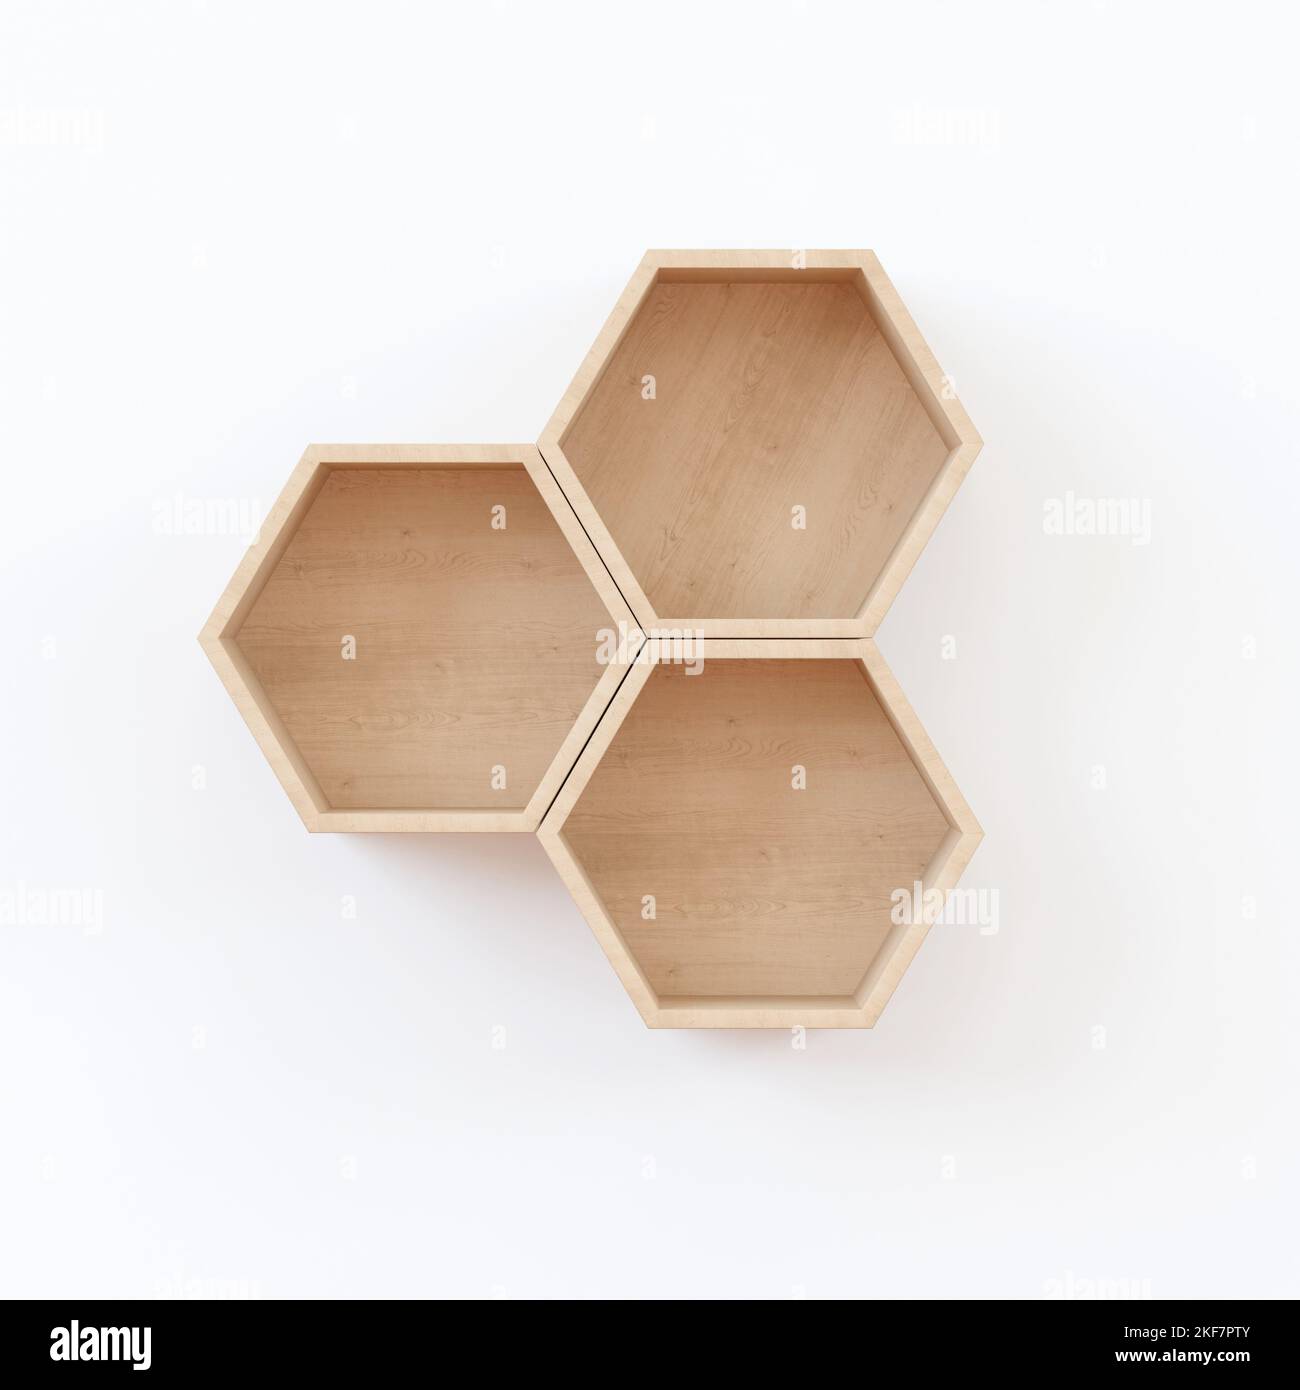 Ein 3D Rendering von Holz Hexagon Regal in japanischem Stil auf weißem  Hintergrund - Möbelkonzept Stockfotografie - Alamy